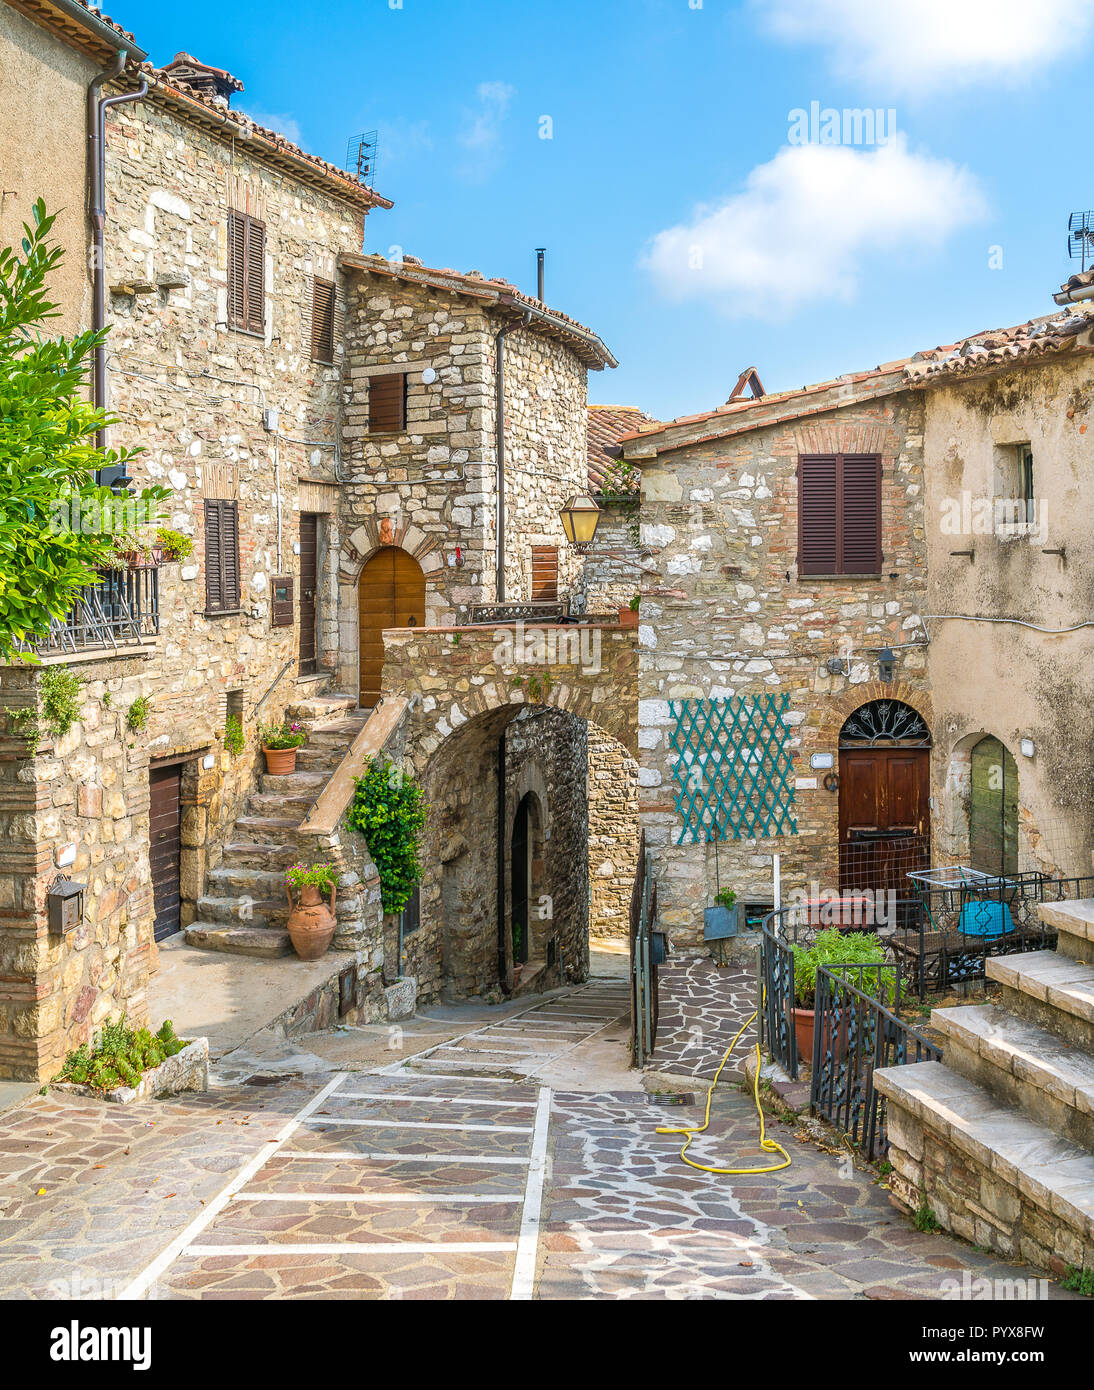 Il villaggio idilliaco di Melezzole, vicino a Montecchio, in provincia di Terni. Umbria, Italia. Foto Stock